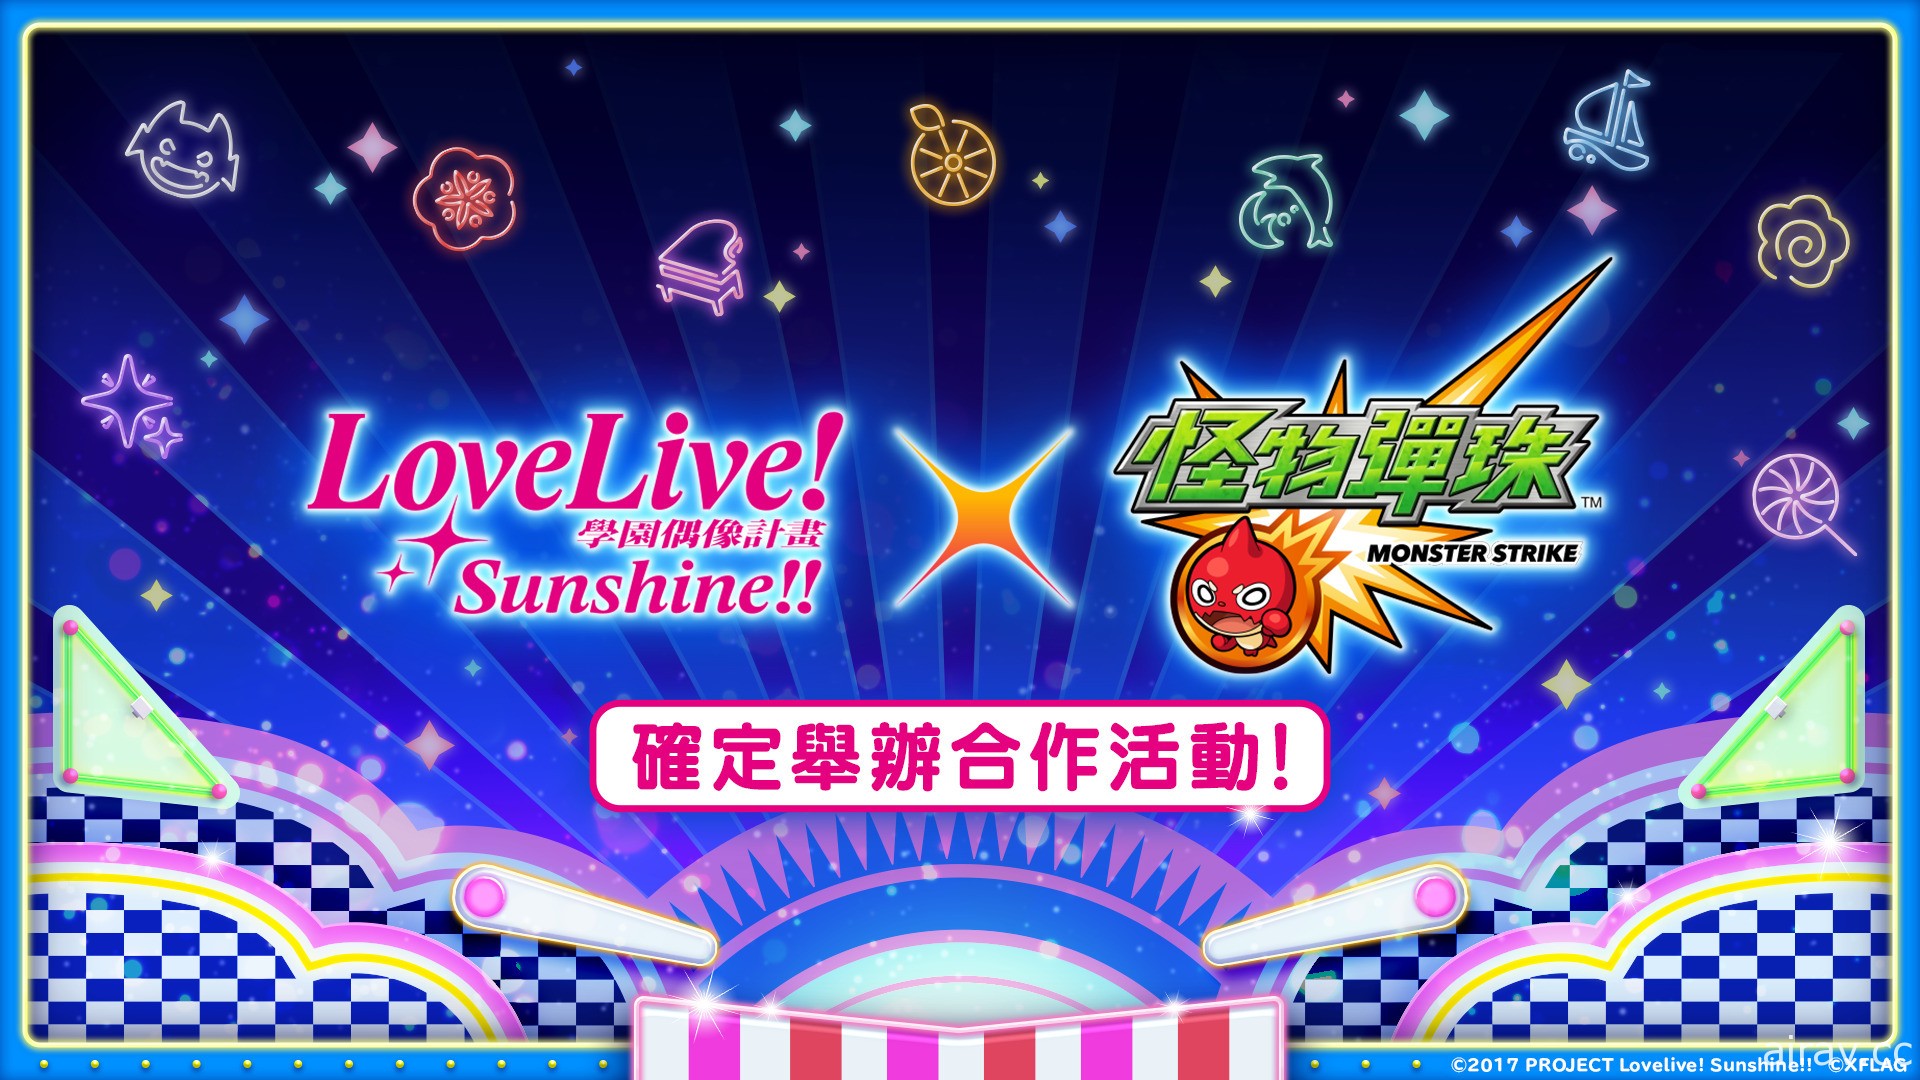 《怪物彈珠》x《Love Live! Sunshine!!》首次合作活動 將於 6 月 26 日開跑